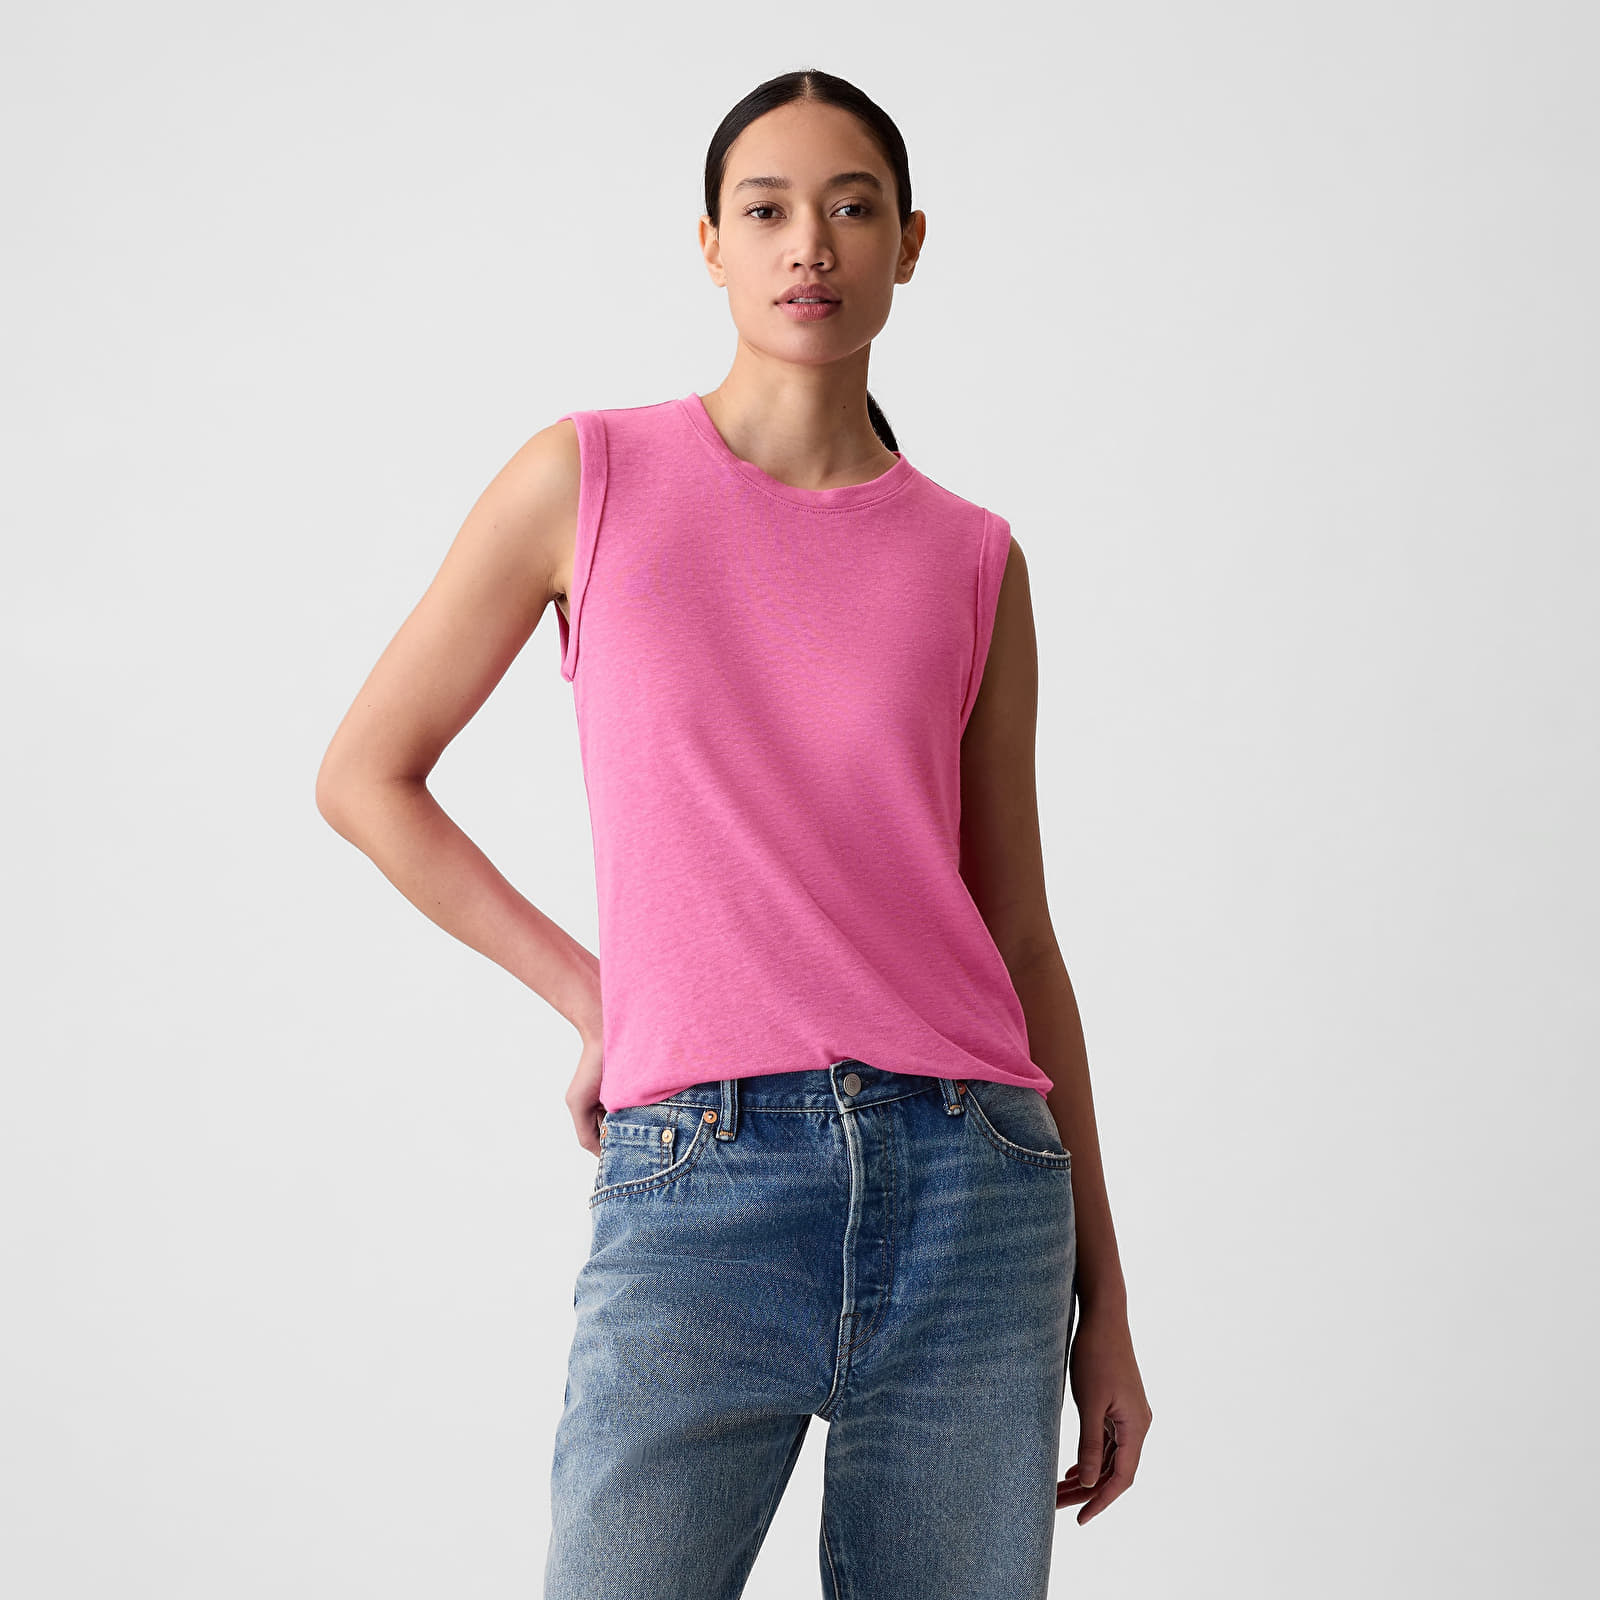 GAP Sleeveless Linen Blend Shell Top Standout Pink